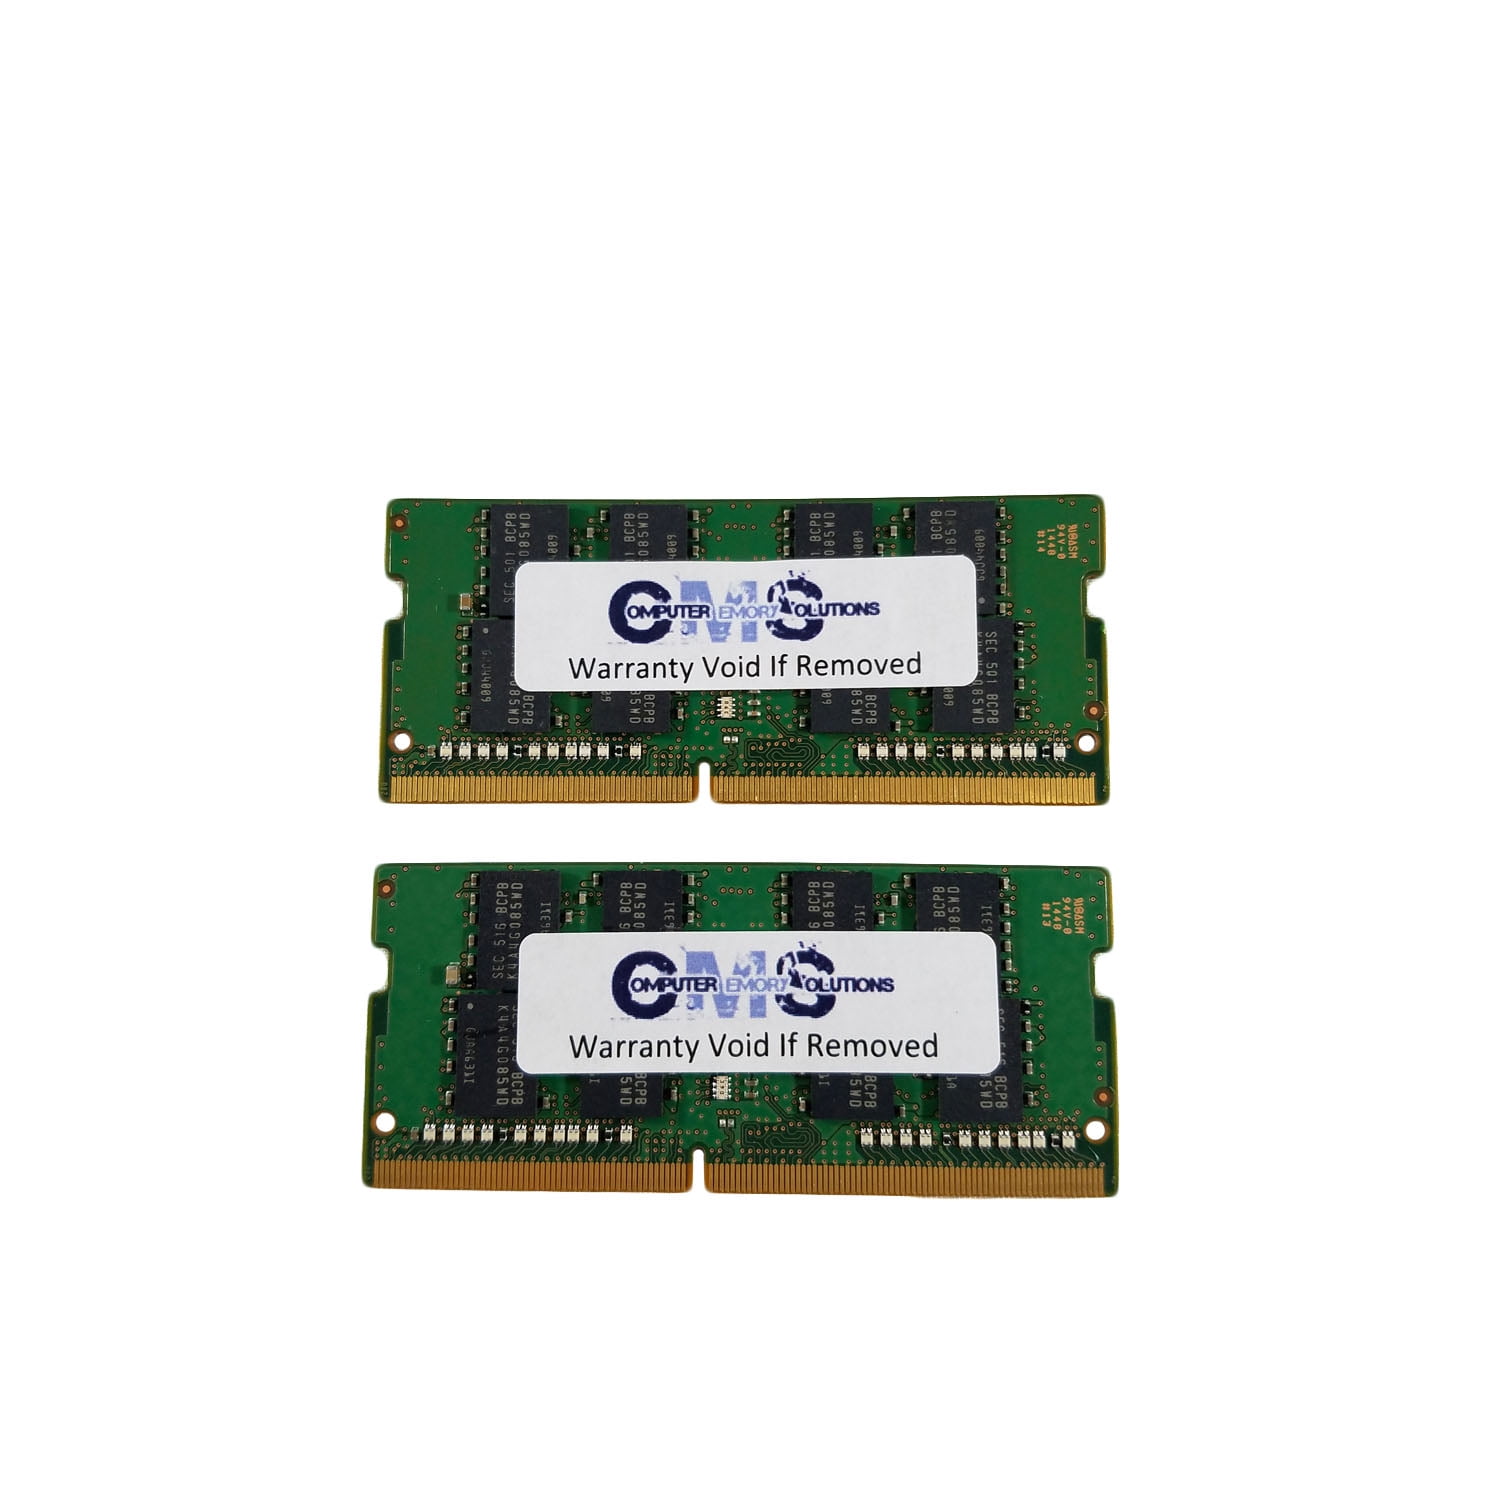 CMS 32GB (2X16GB) DDR4 19200 2400MHZ Non ECC SODIMM Memory Ram